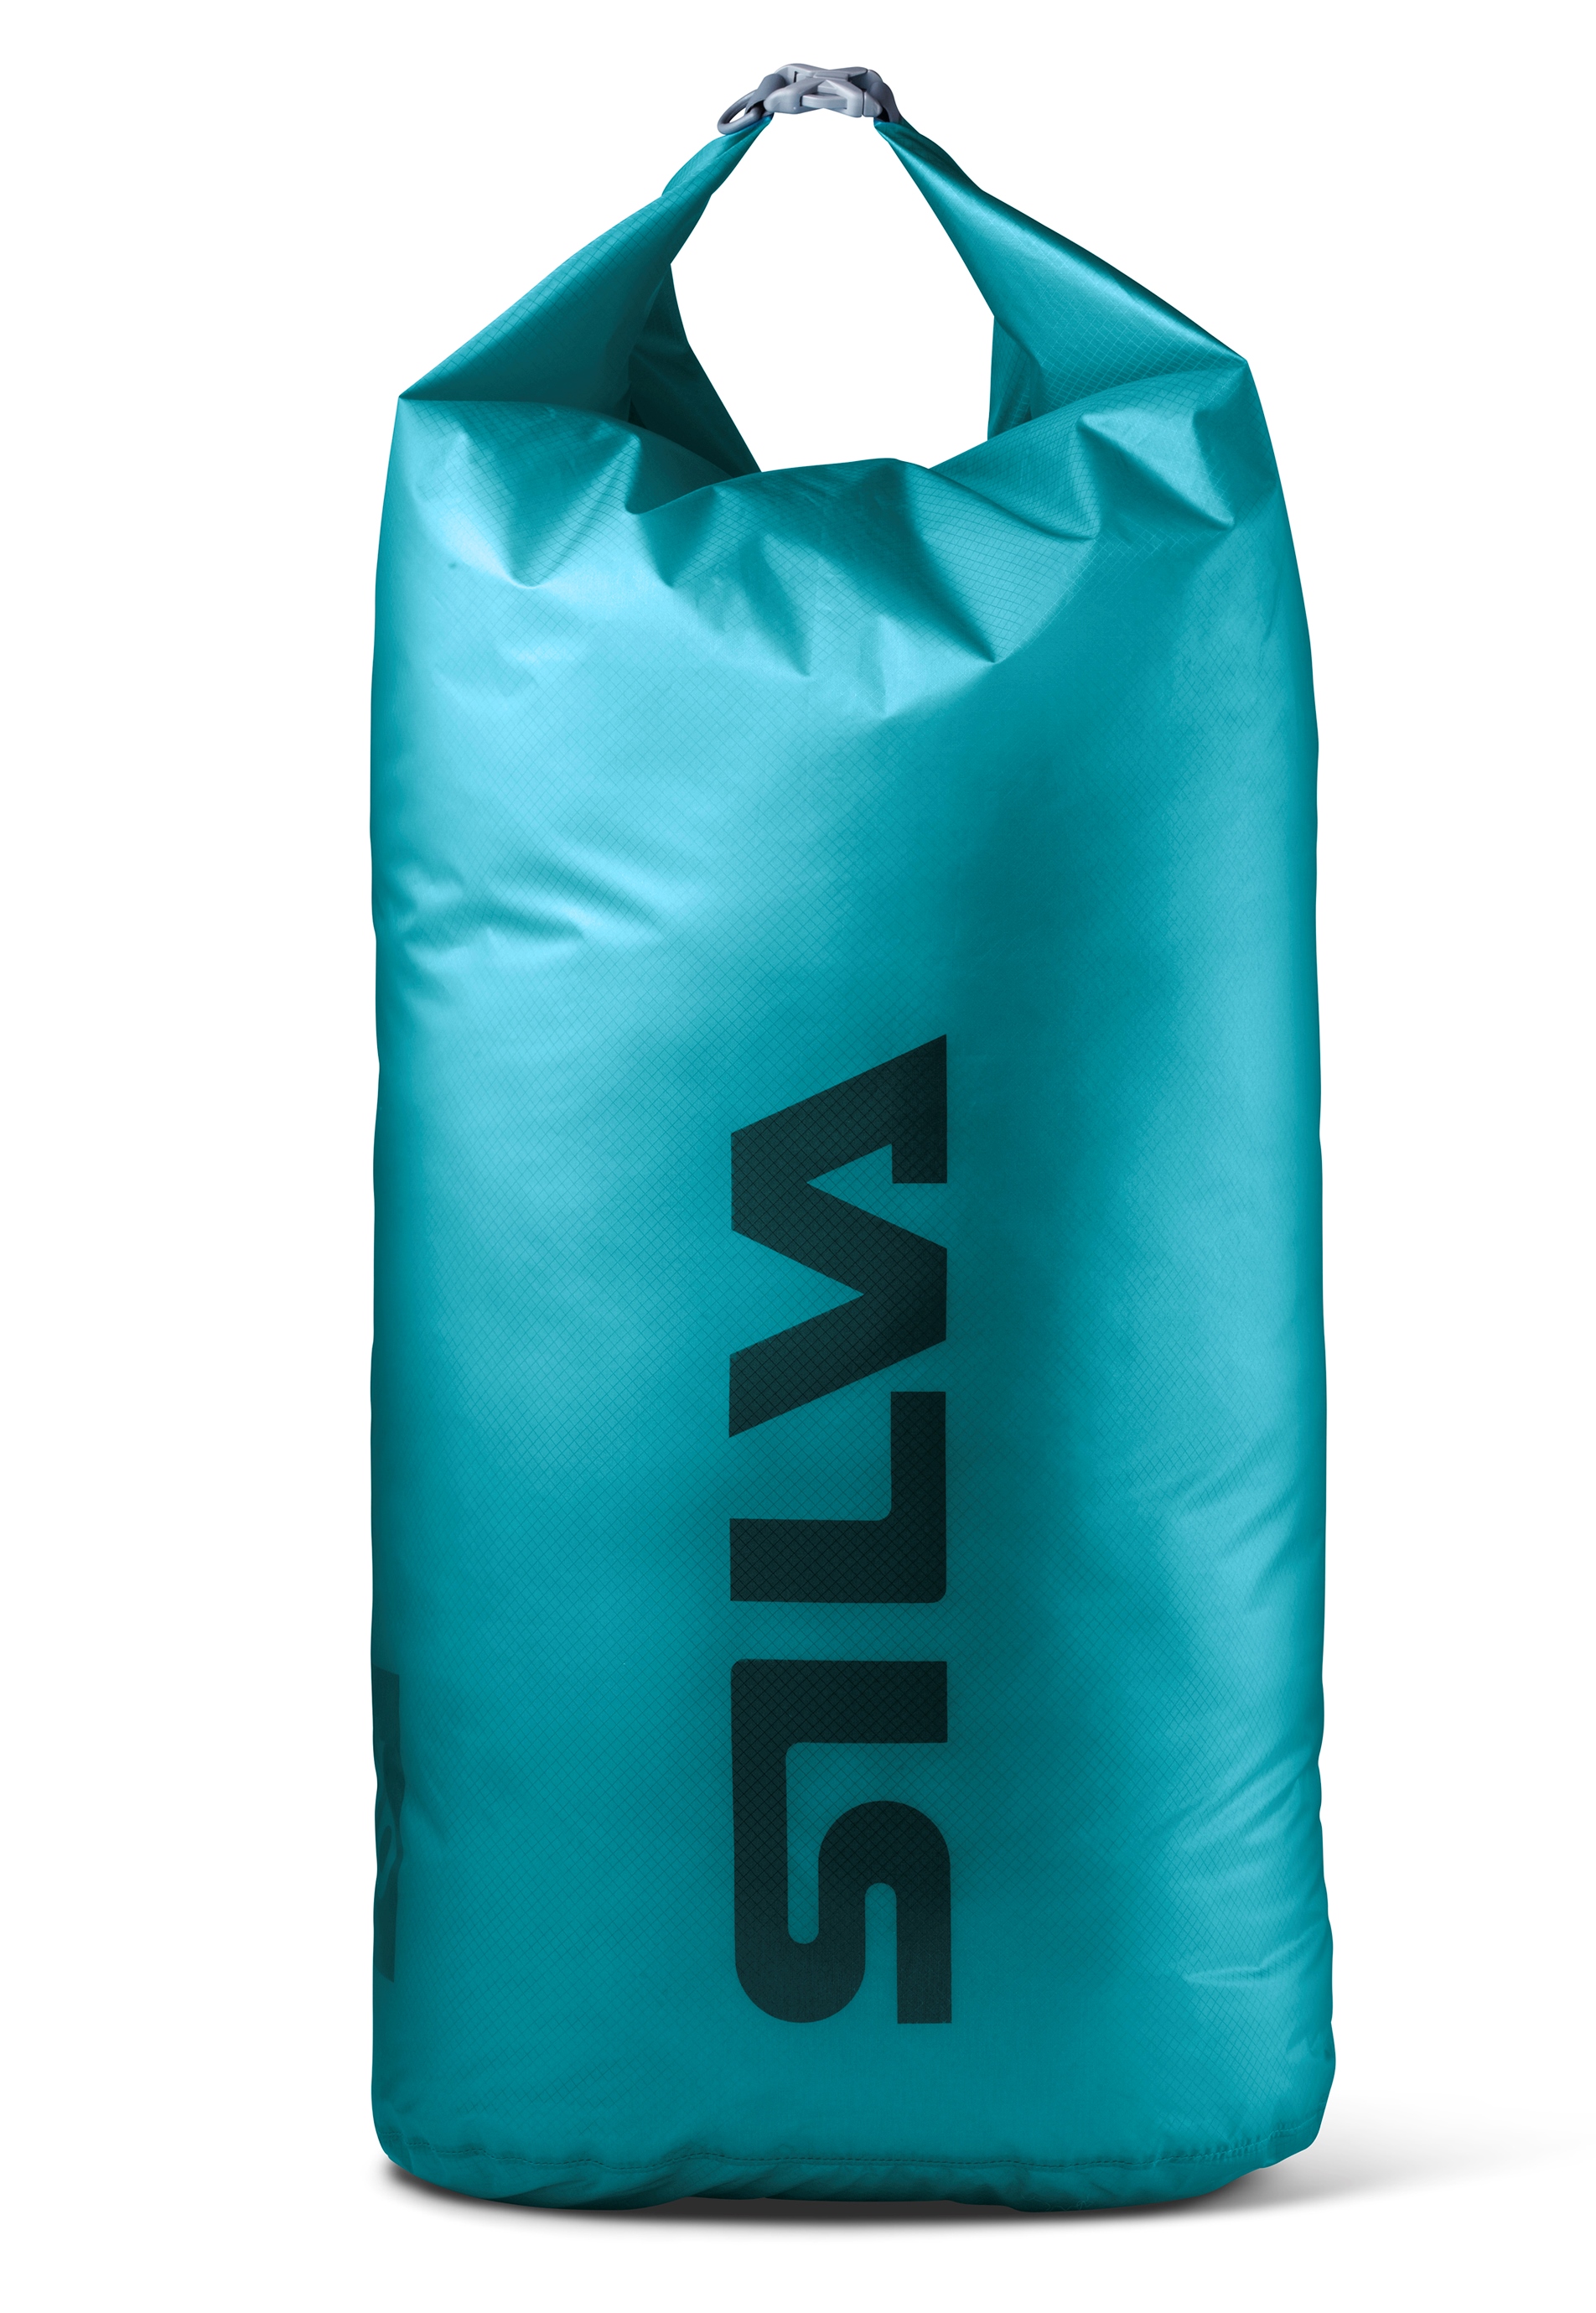 Silva - Прочный гермомешок Carry Dry Bag 30D